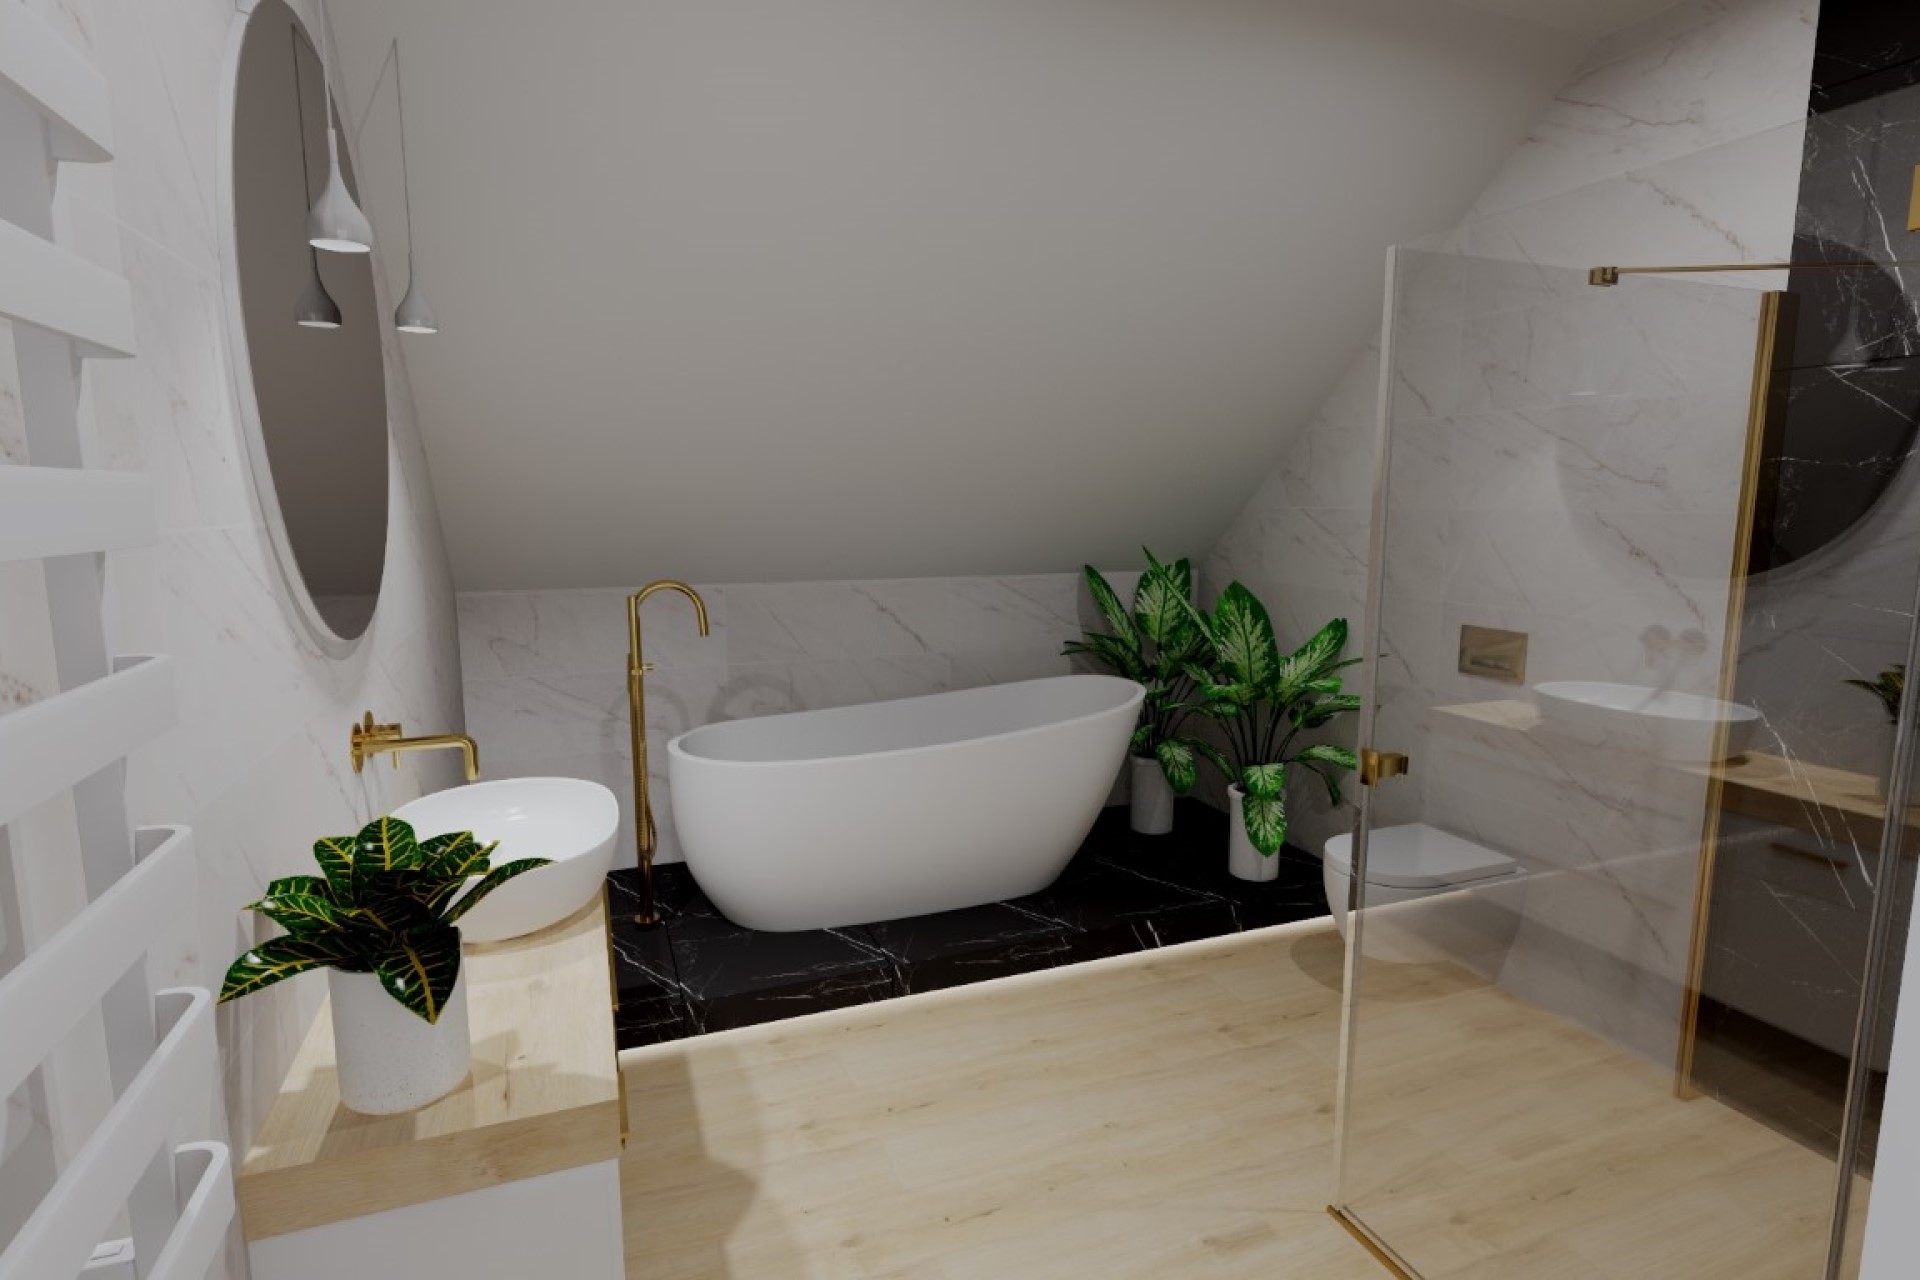 Płytki imitacja drewna - wizualizacja 3D - salon łazienek LUBAR Rybnik